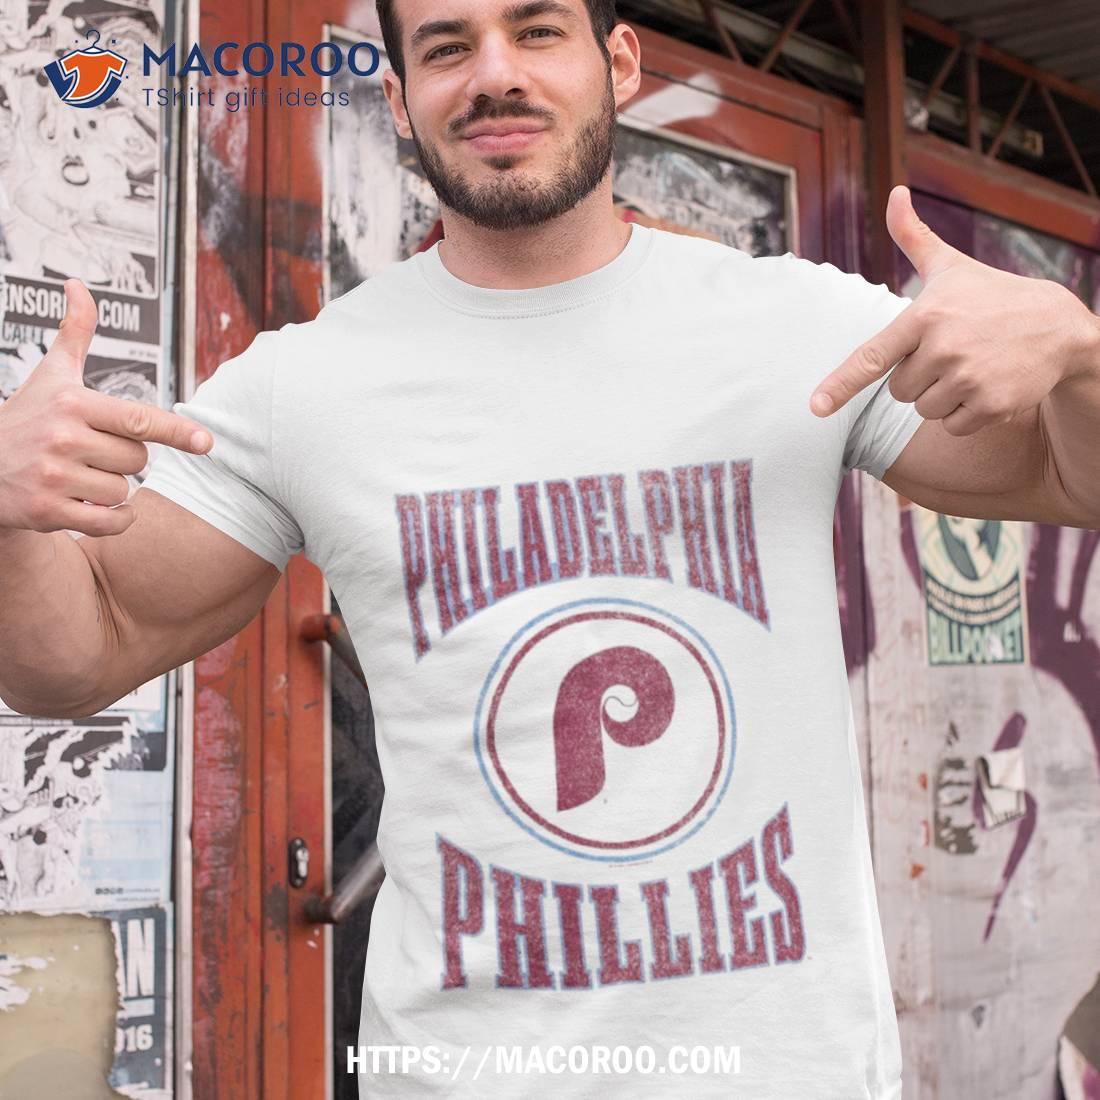 Philadelphia Phillies Arched Logo Slub T Shirt